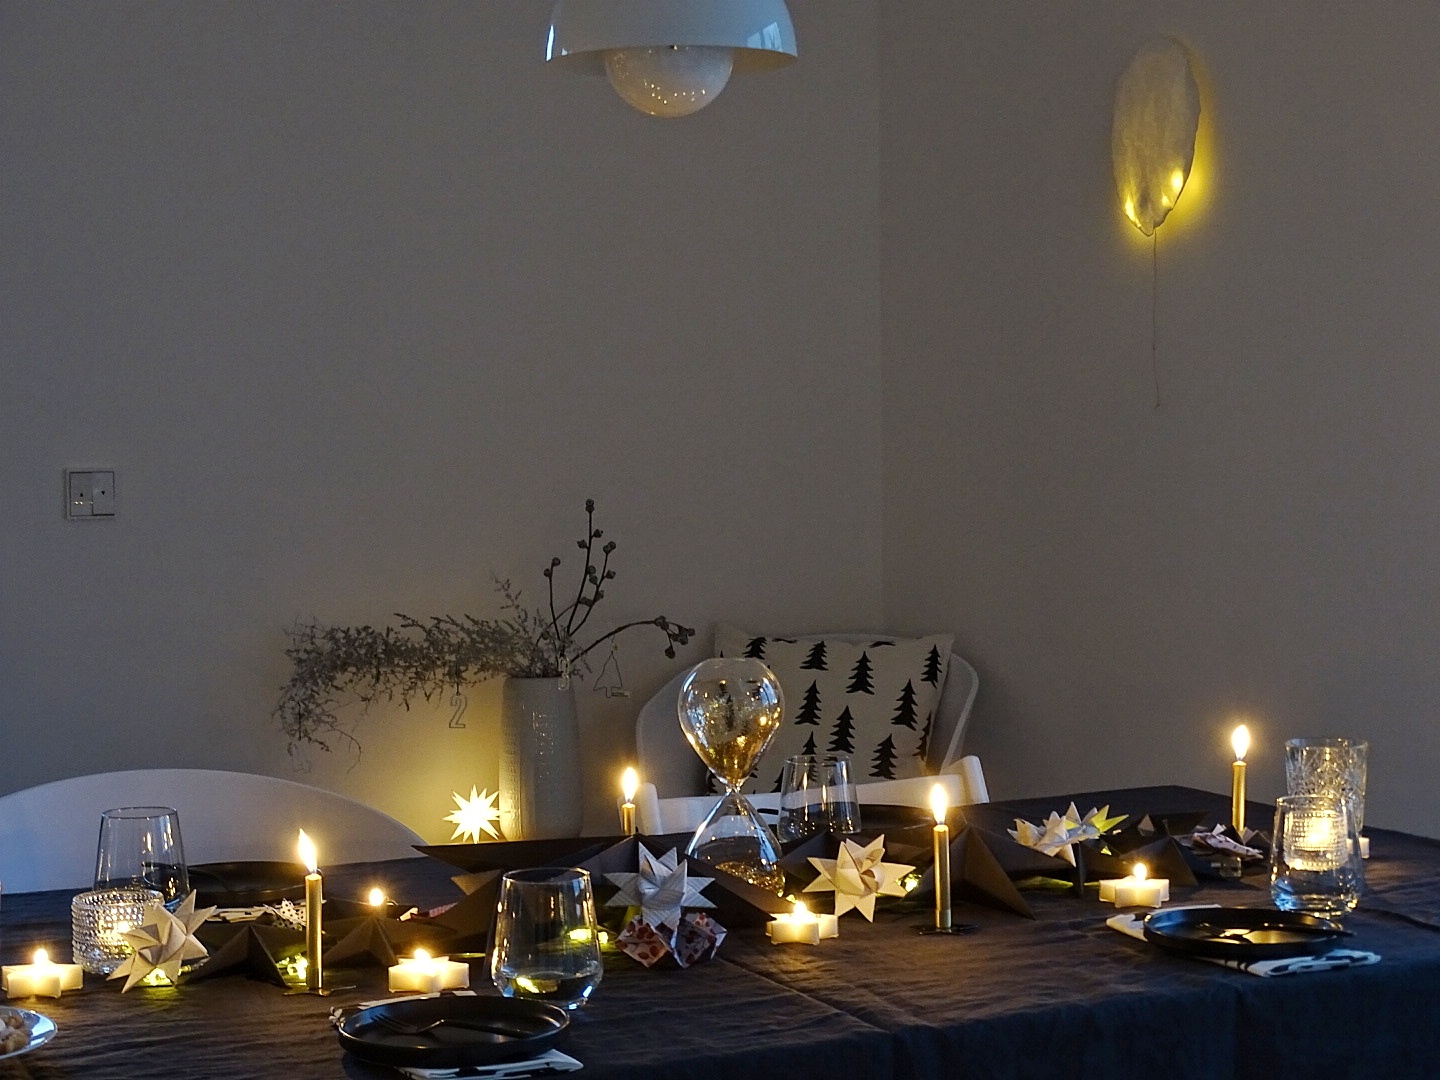 Weihnachtliche Tischdeko-Idee 'In sternklarer Nacht' mit Schwarz, Gold, vielen Kerzen & Sternen | mammilade.com